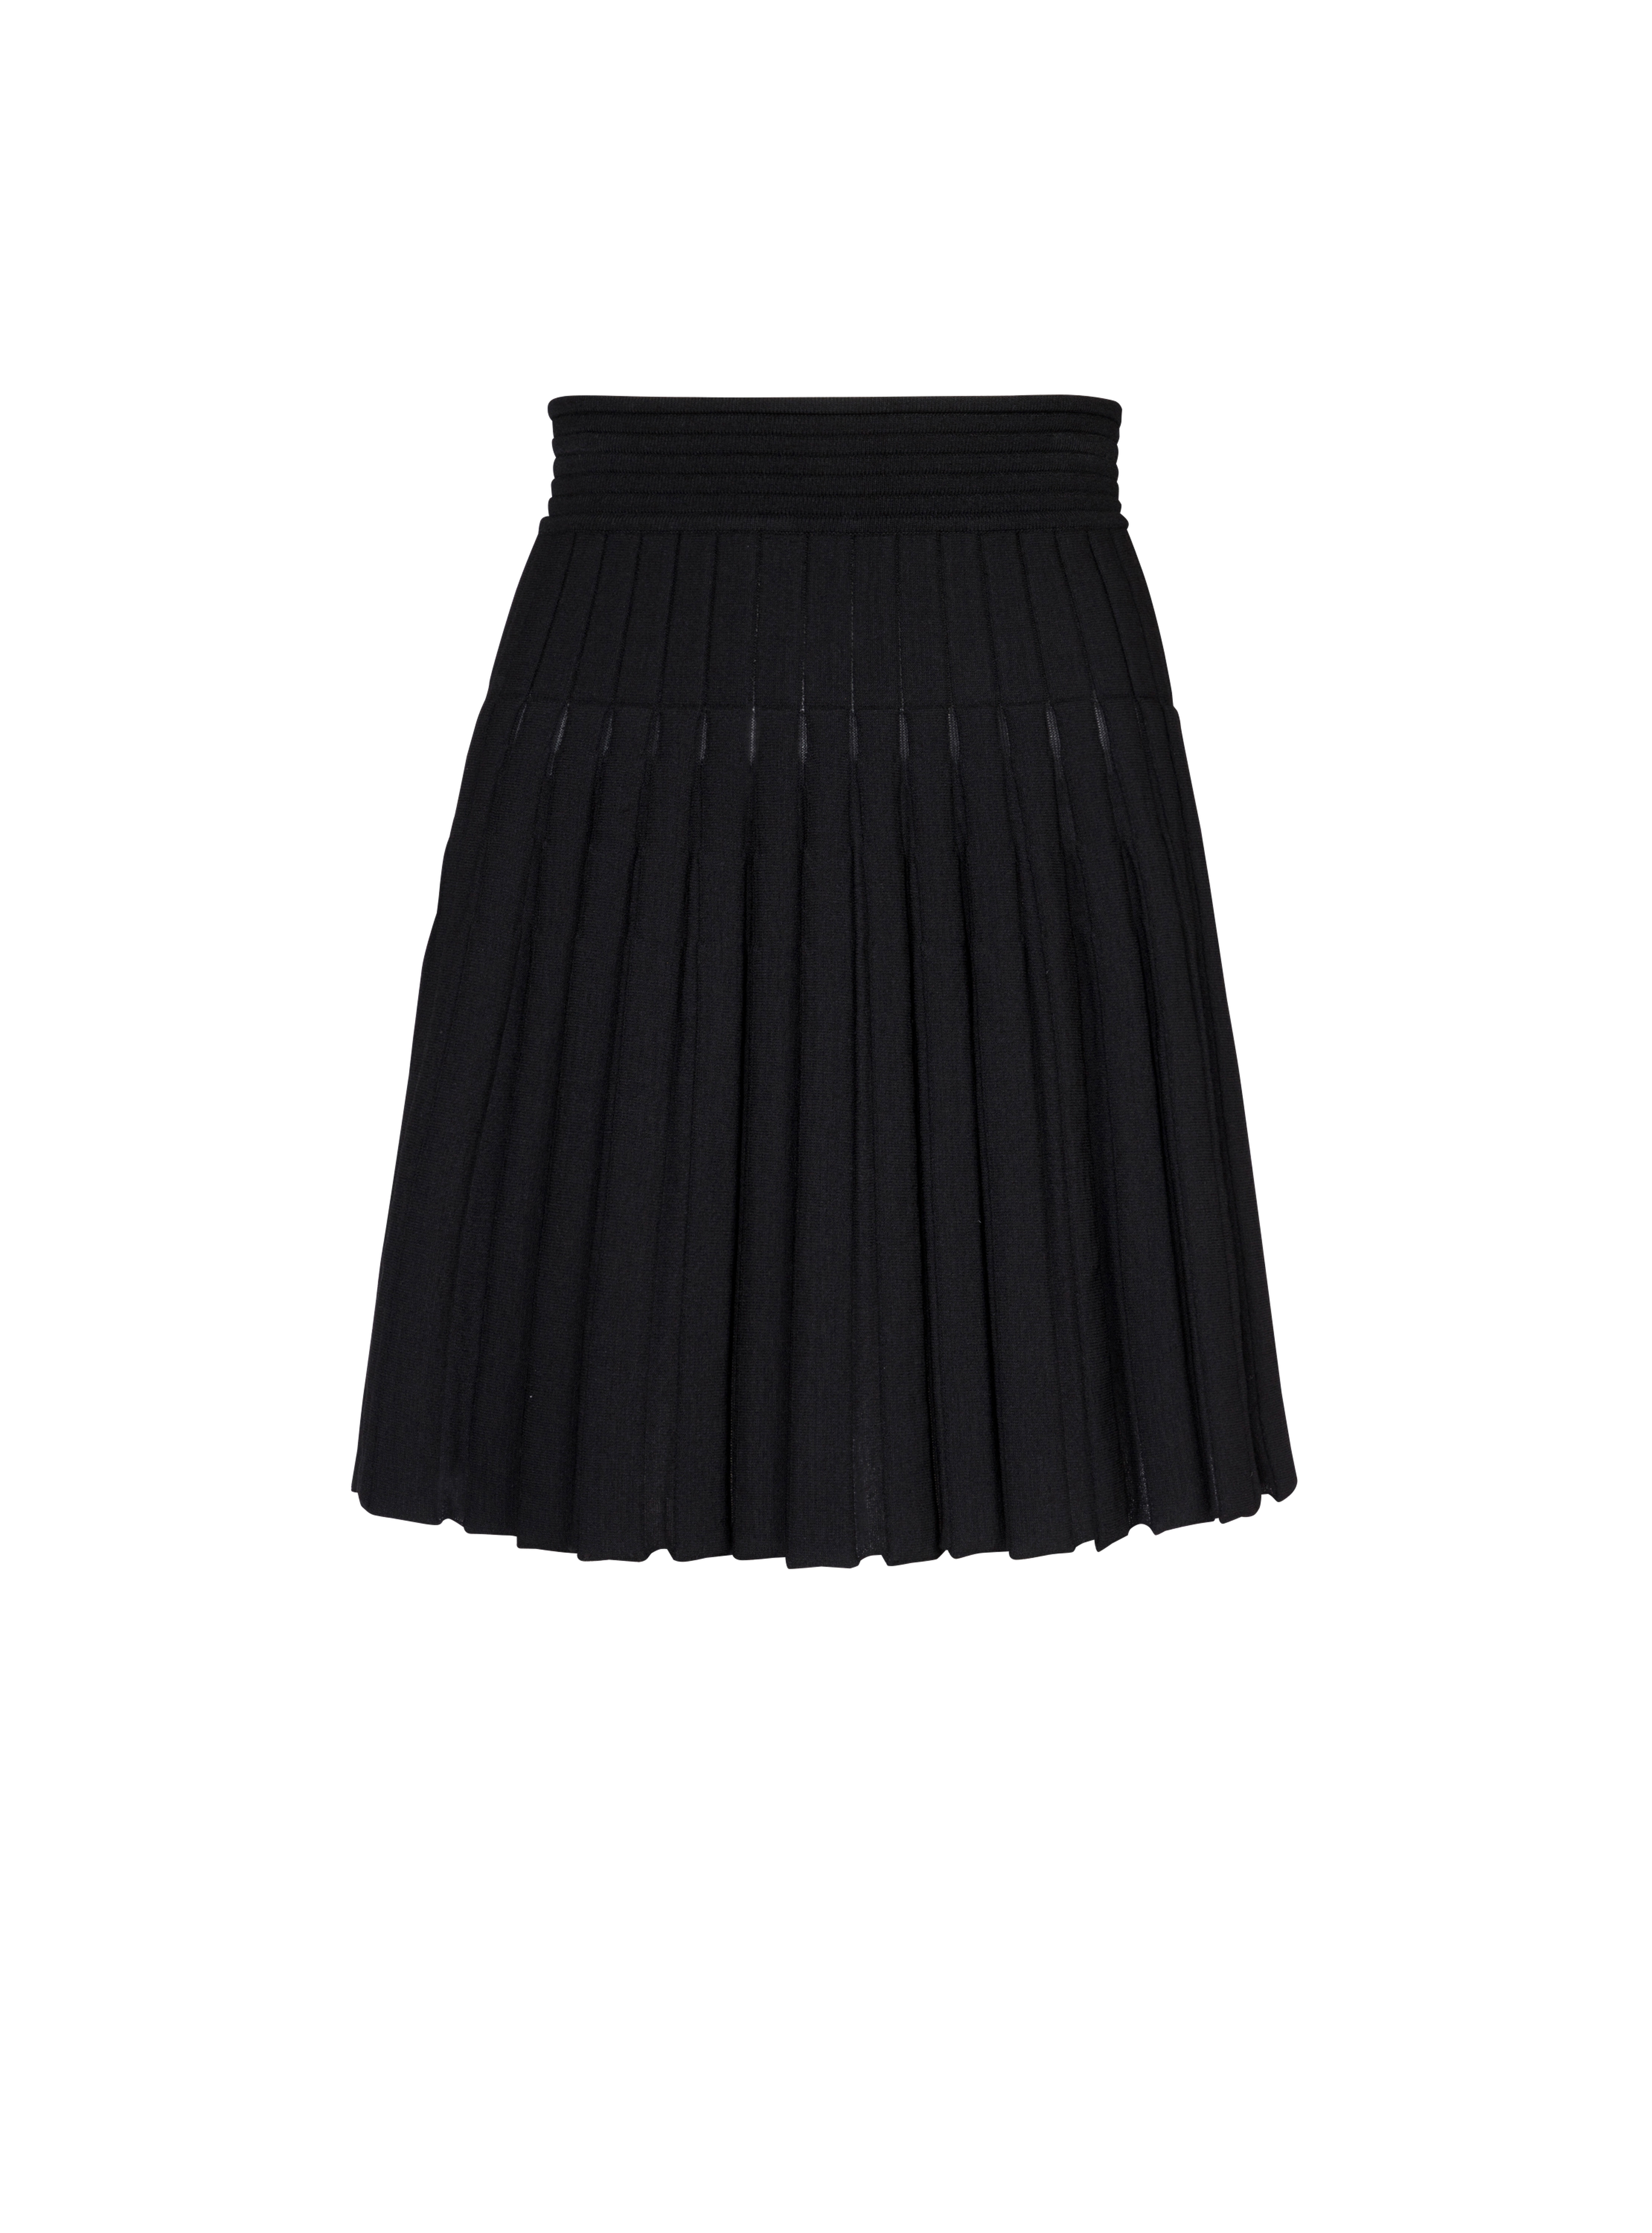 Short pleated knit skirt, black